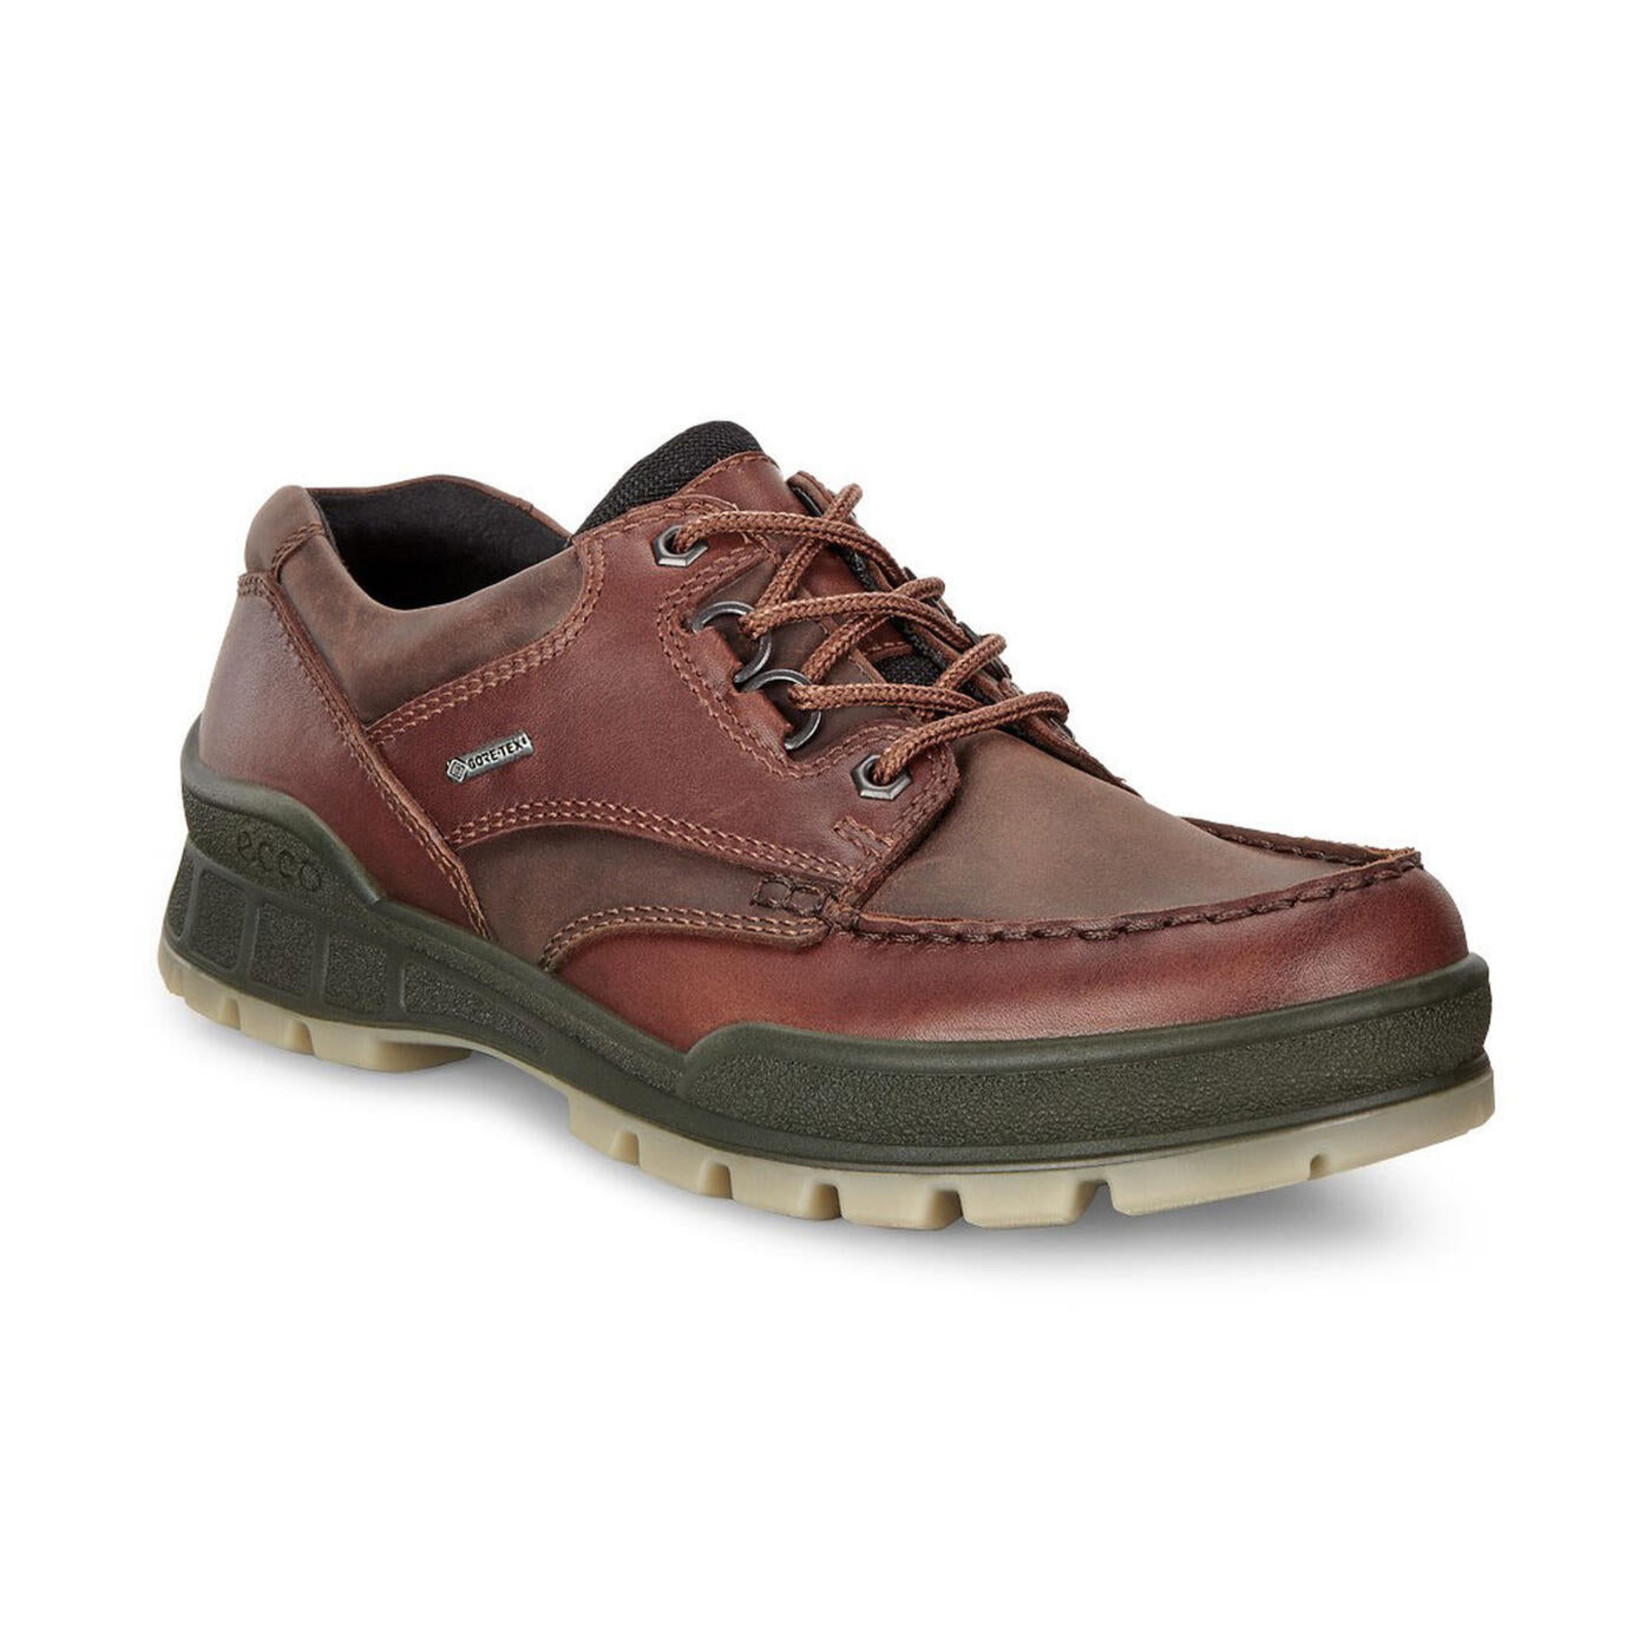 Alexander Graham Bell Zwakheid gevoeligheid Ecco Track 25 Men's Hiking Shoes - Shippy Shoes